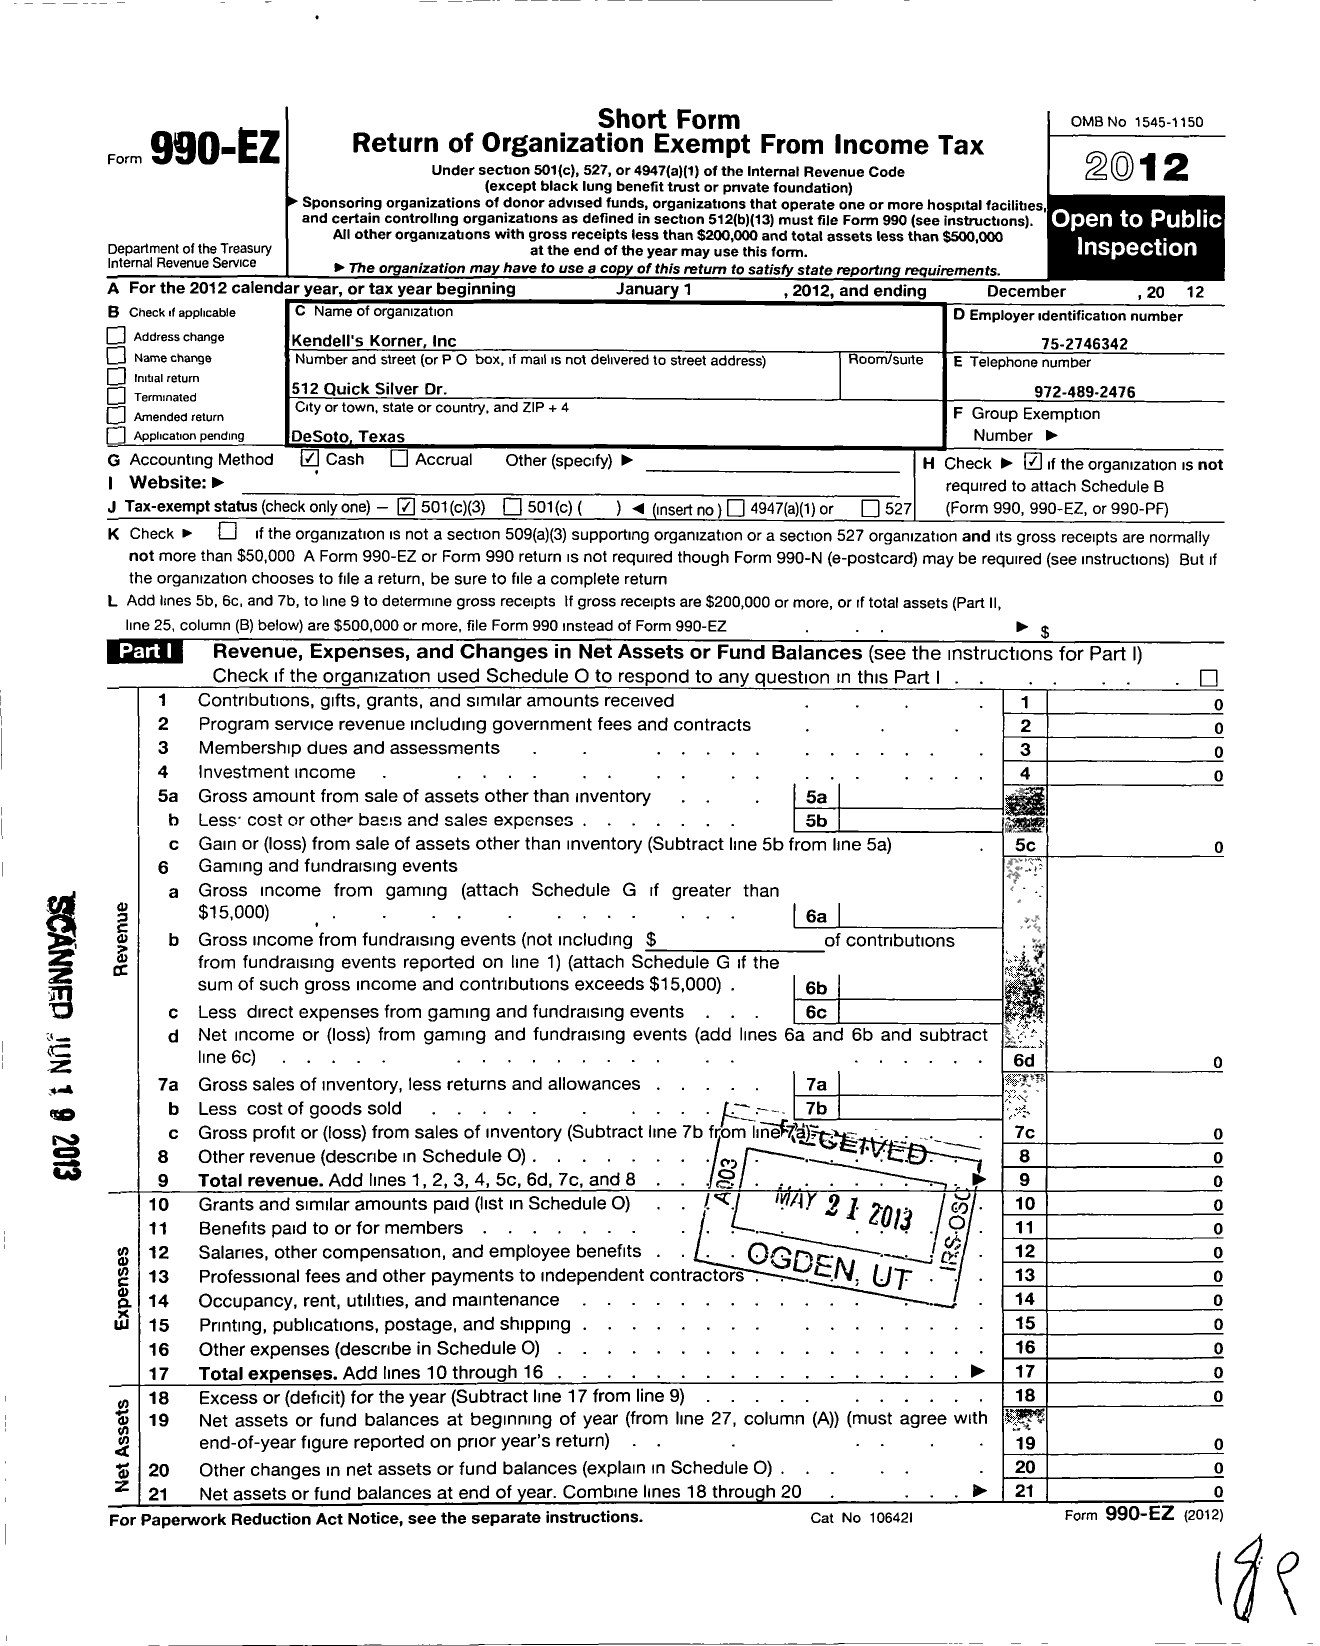 Image of first page of 2012 Form 990EZ for Kendells Korner